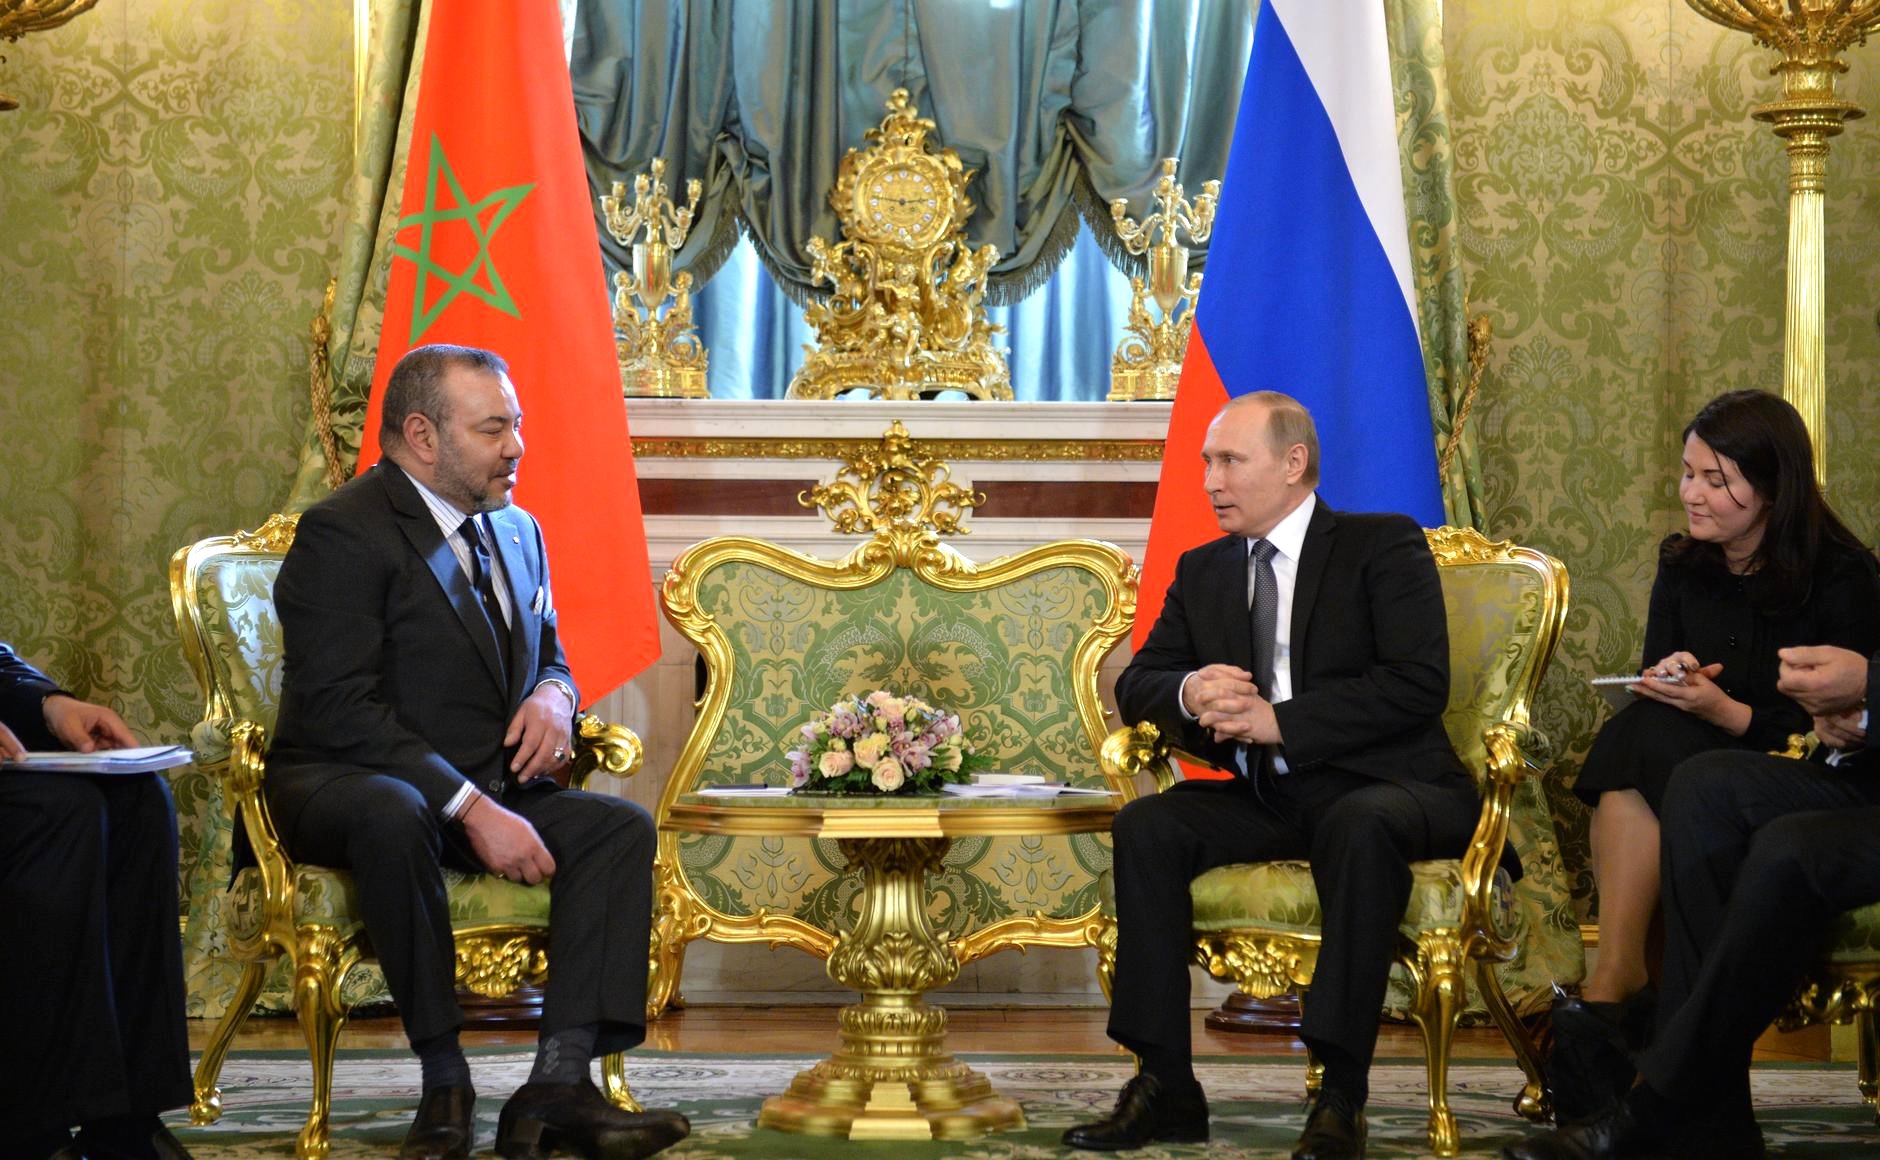 Vladimir_Putin_with_Mohammed_VI_of_Morocco_%282016-03-15%29_03.JPG